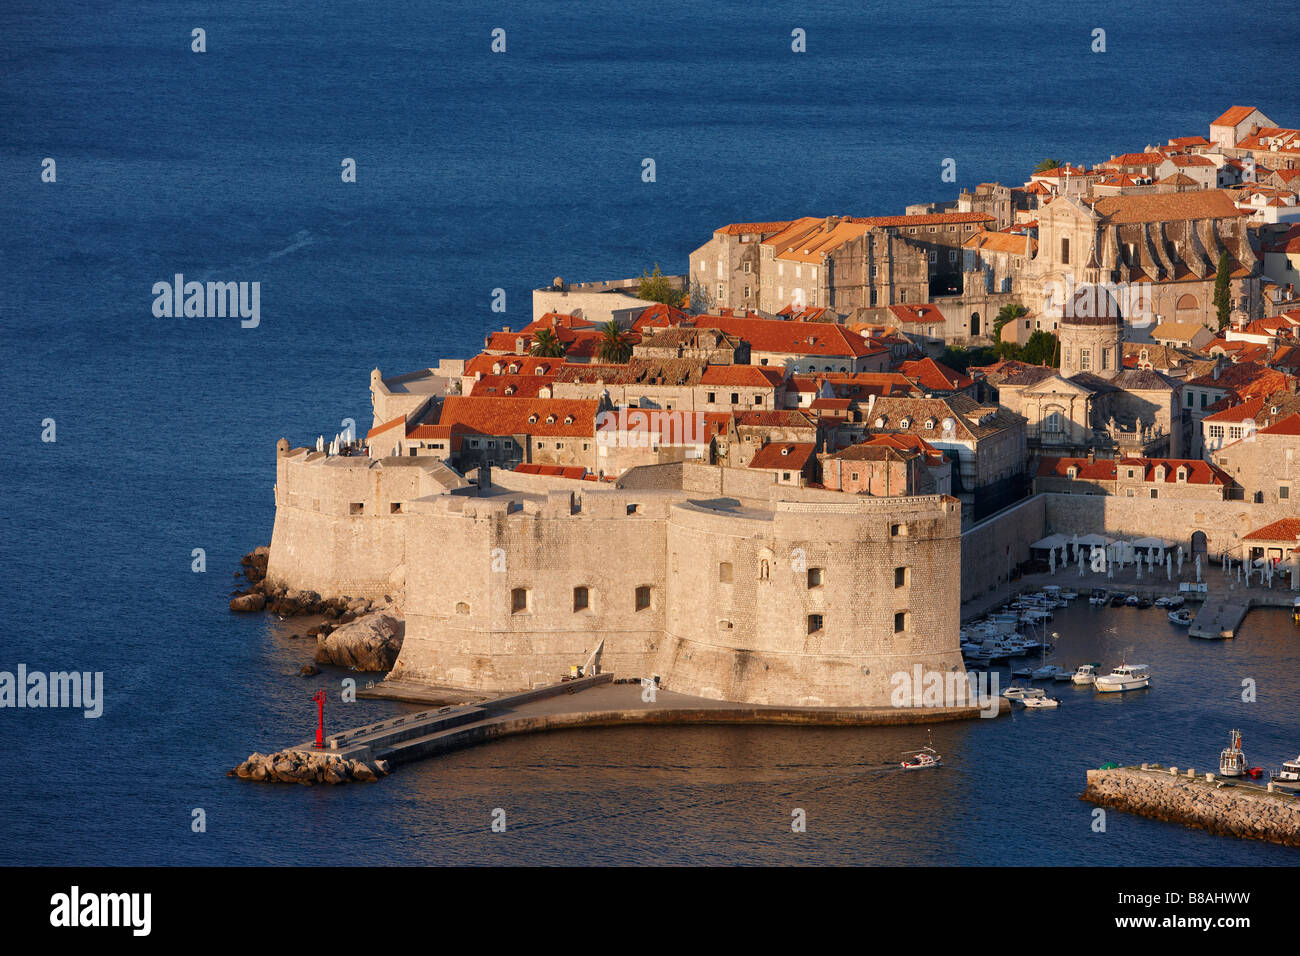 La vieille ville, Dubrovnik, Dalmatie, Croatie Banque D'Images